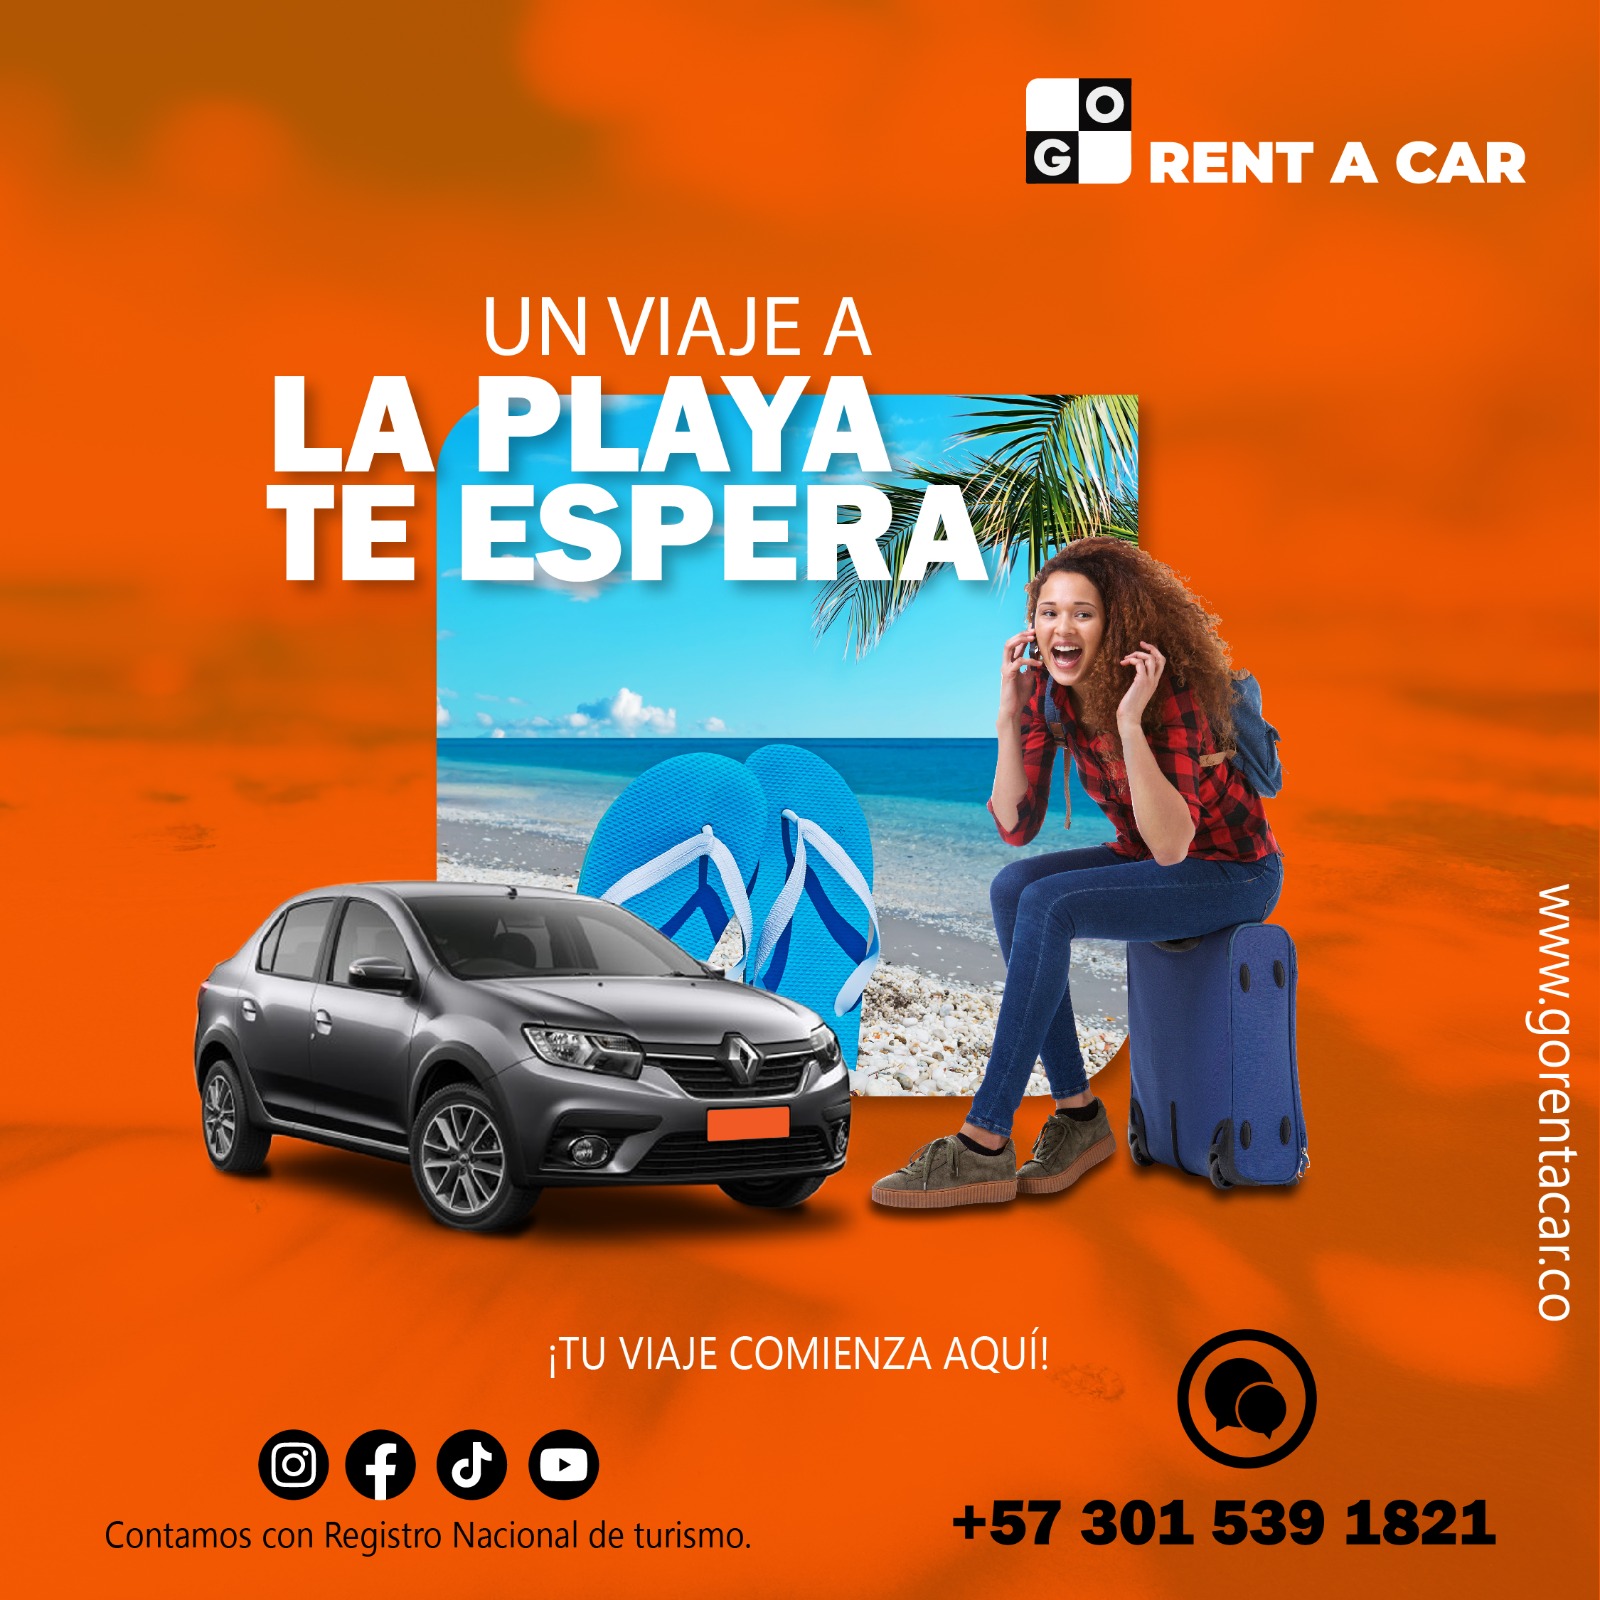 Go Rent a car Medellín